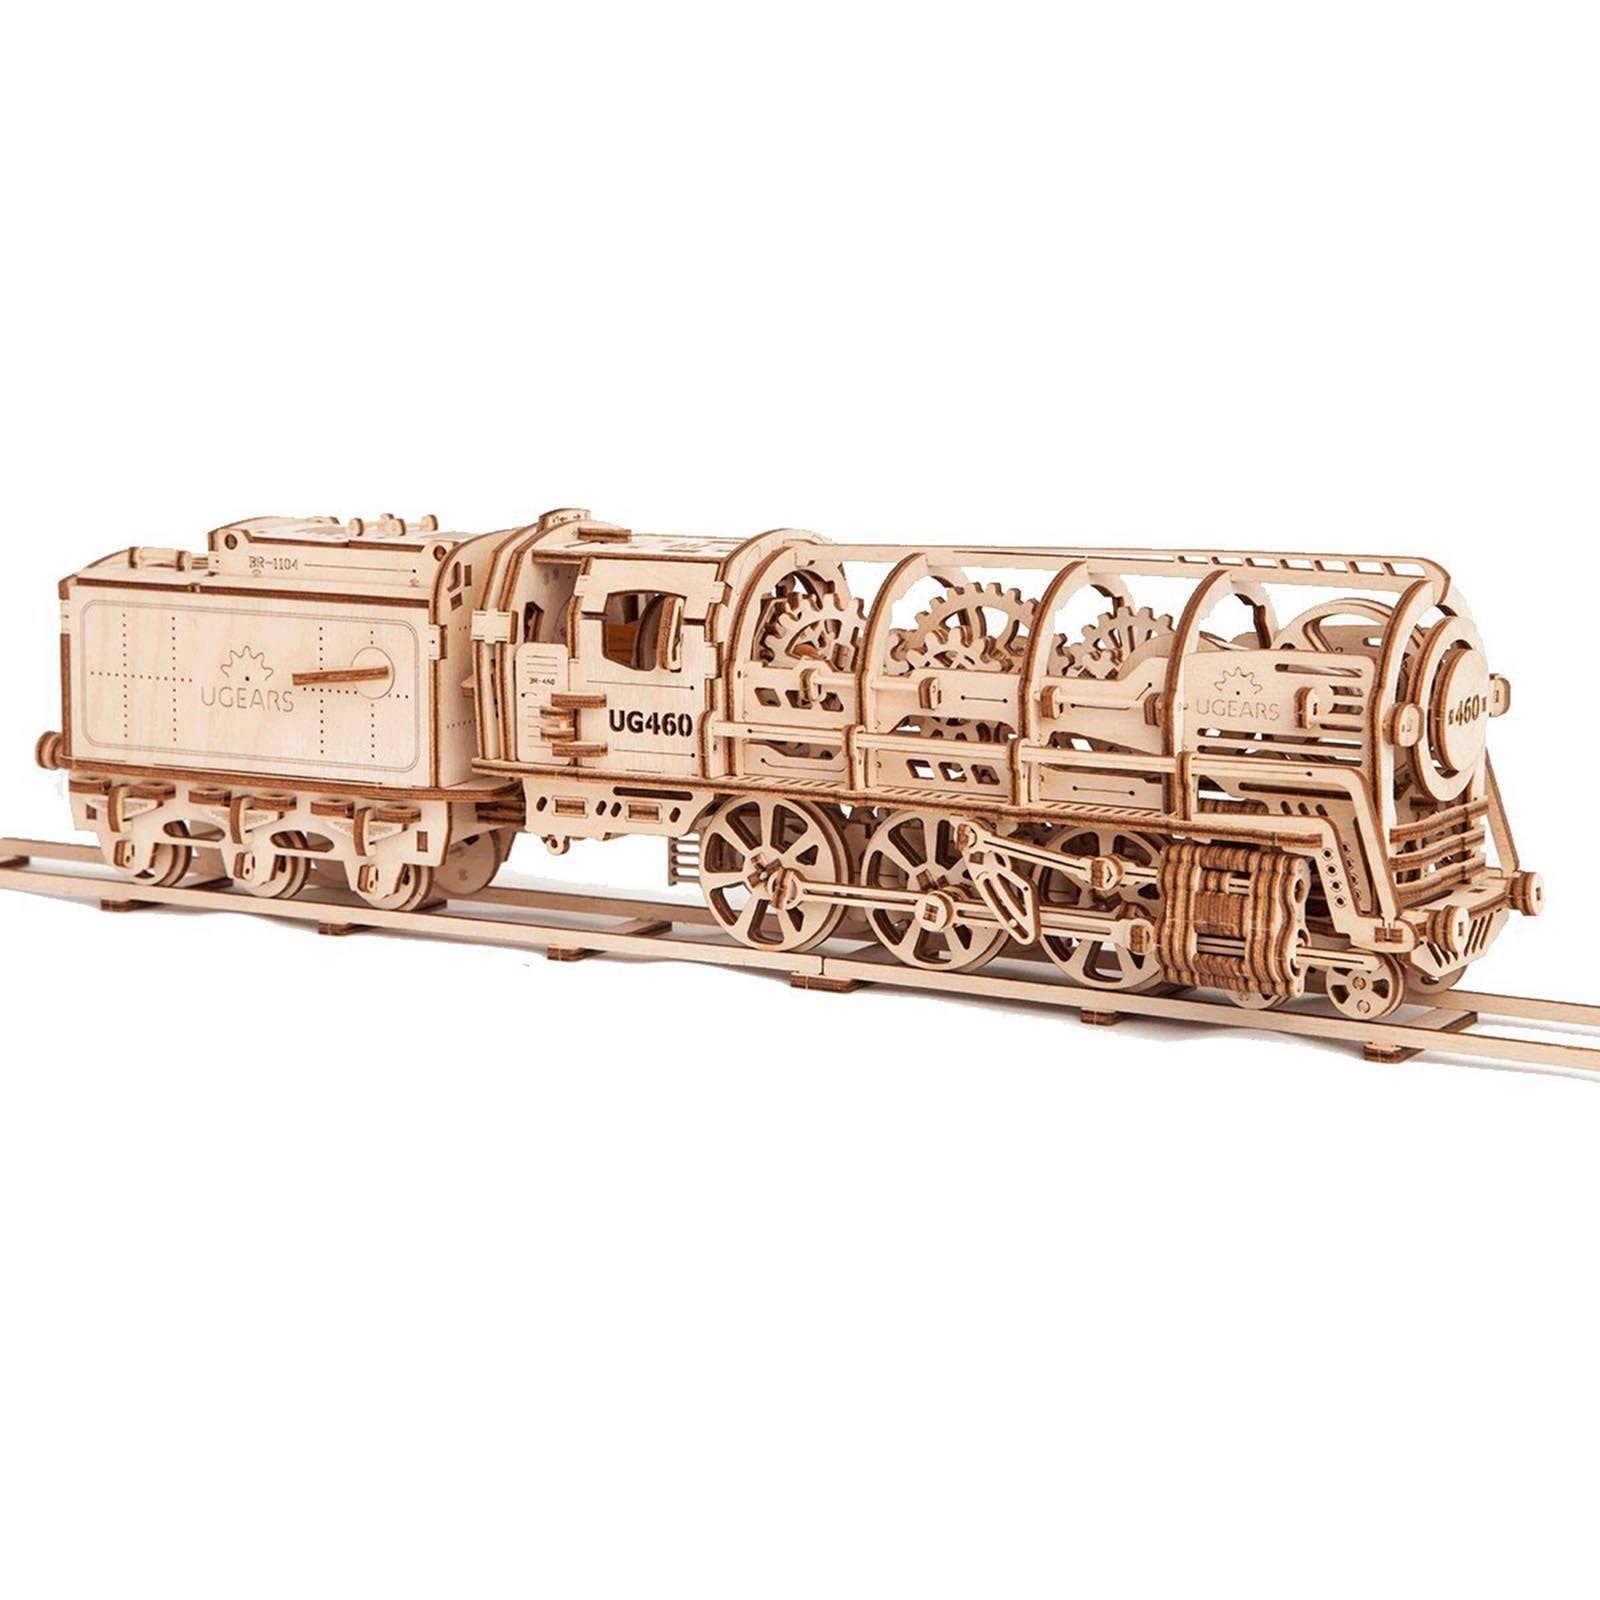 Ugears Locomotive Mechanical 3D Puzzle